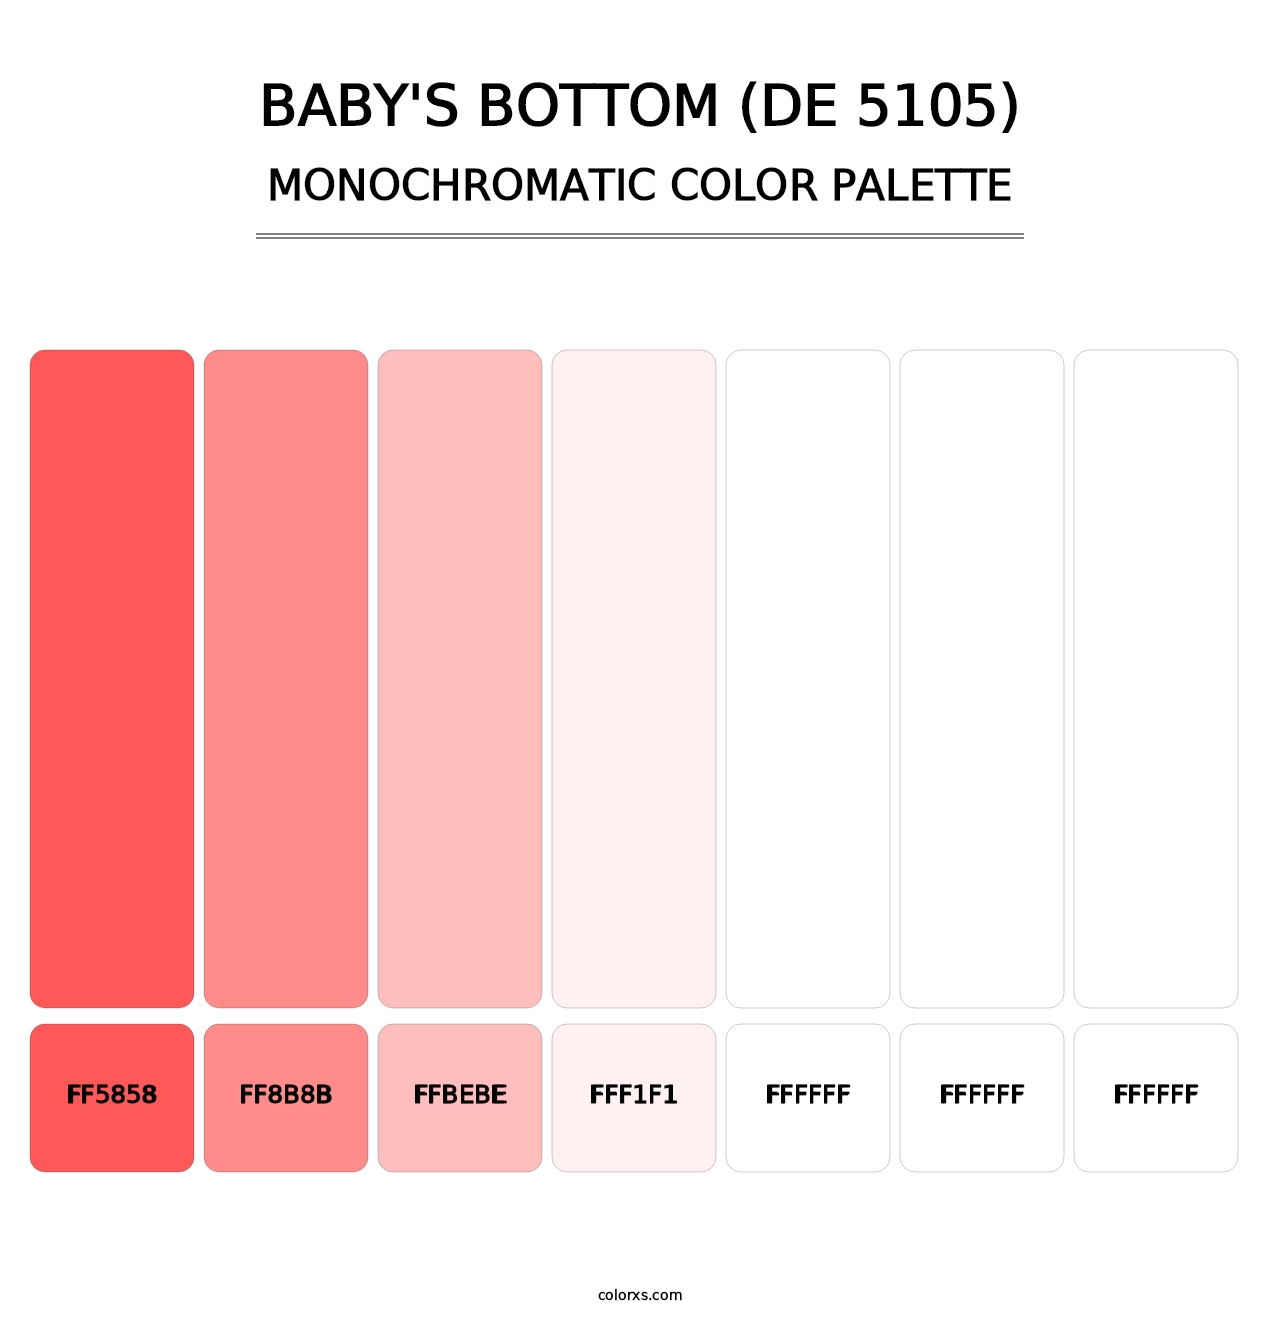 Baby's Bottom (DE 5105) - Monochromatic Color Palette